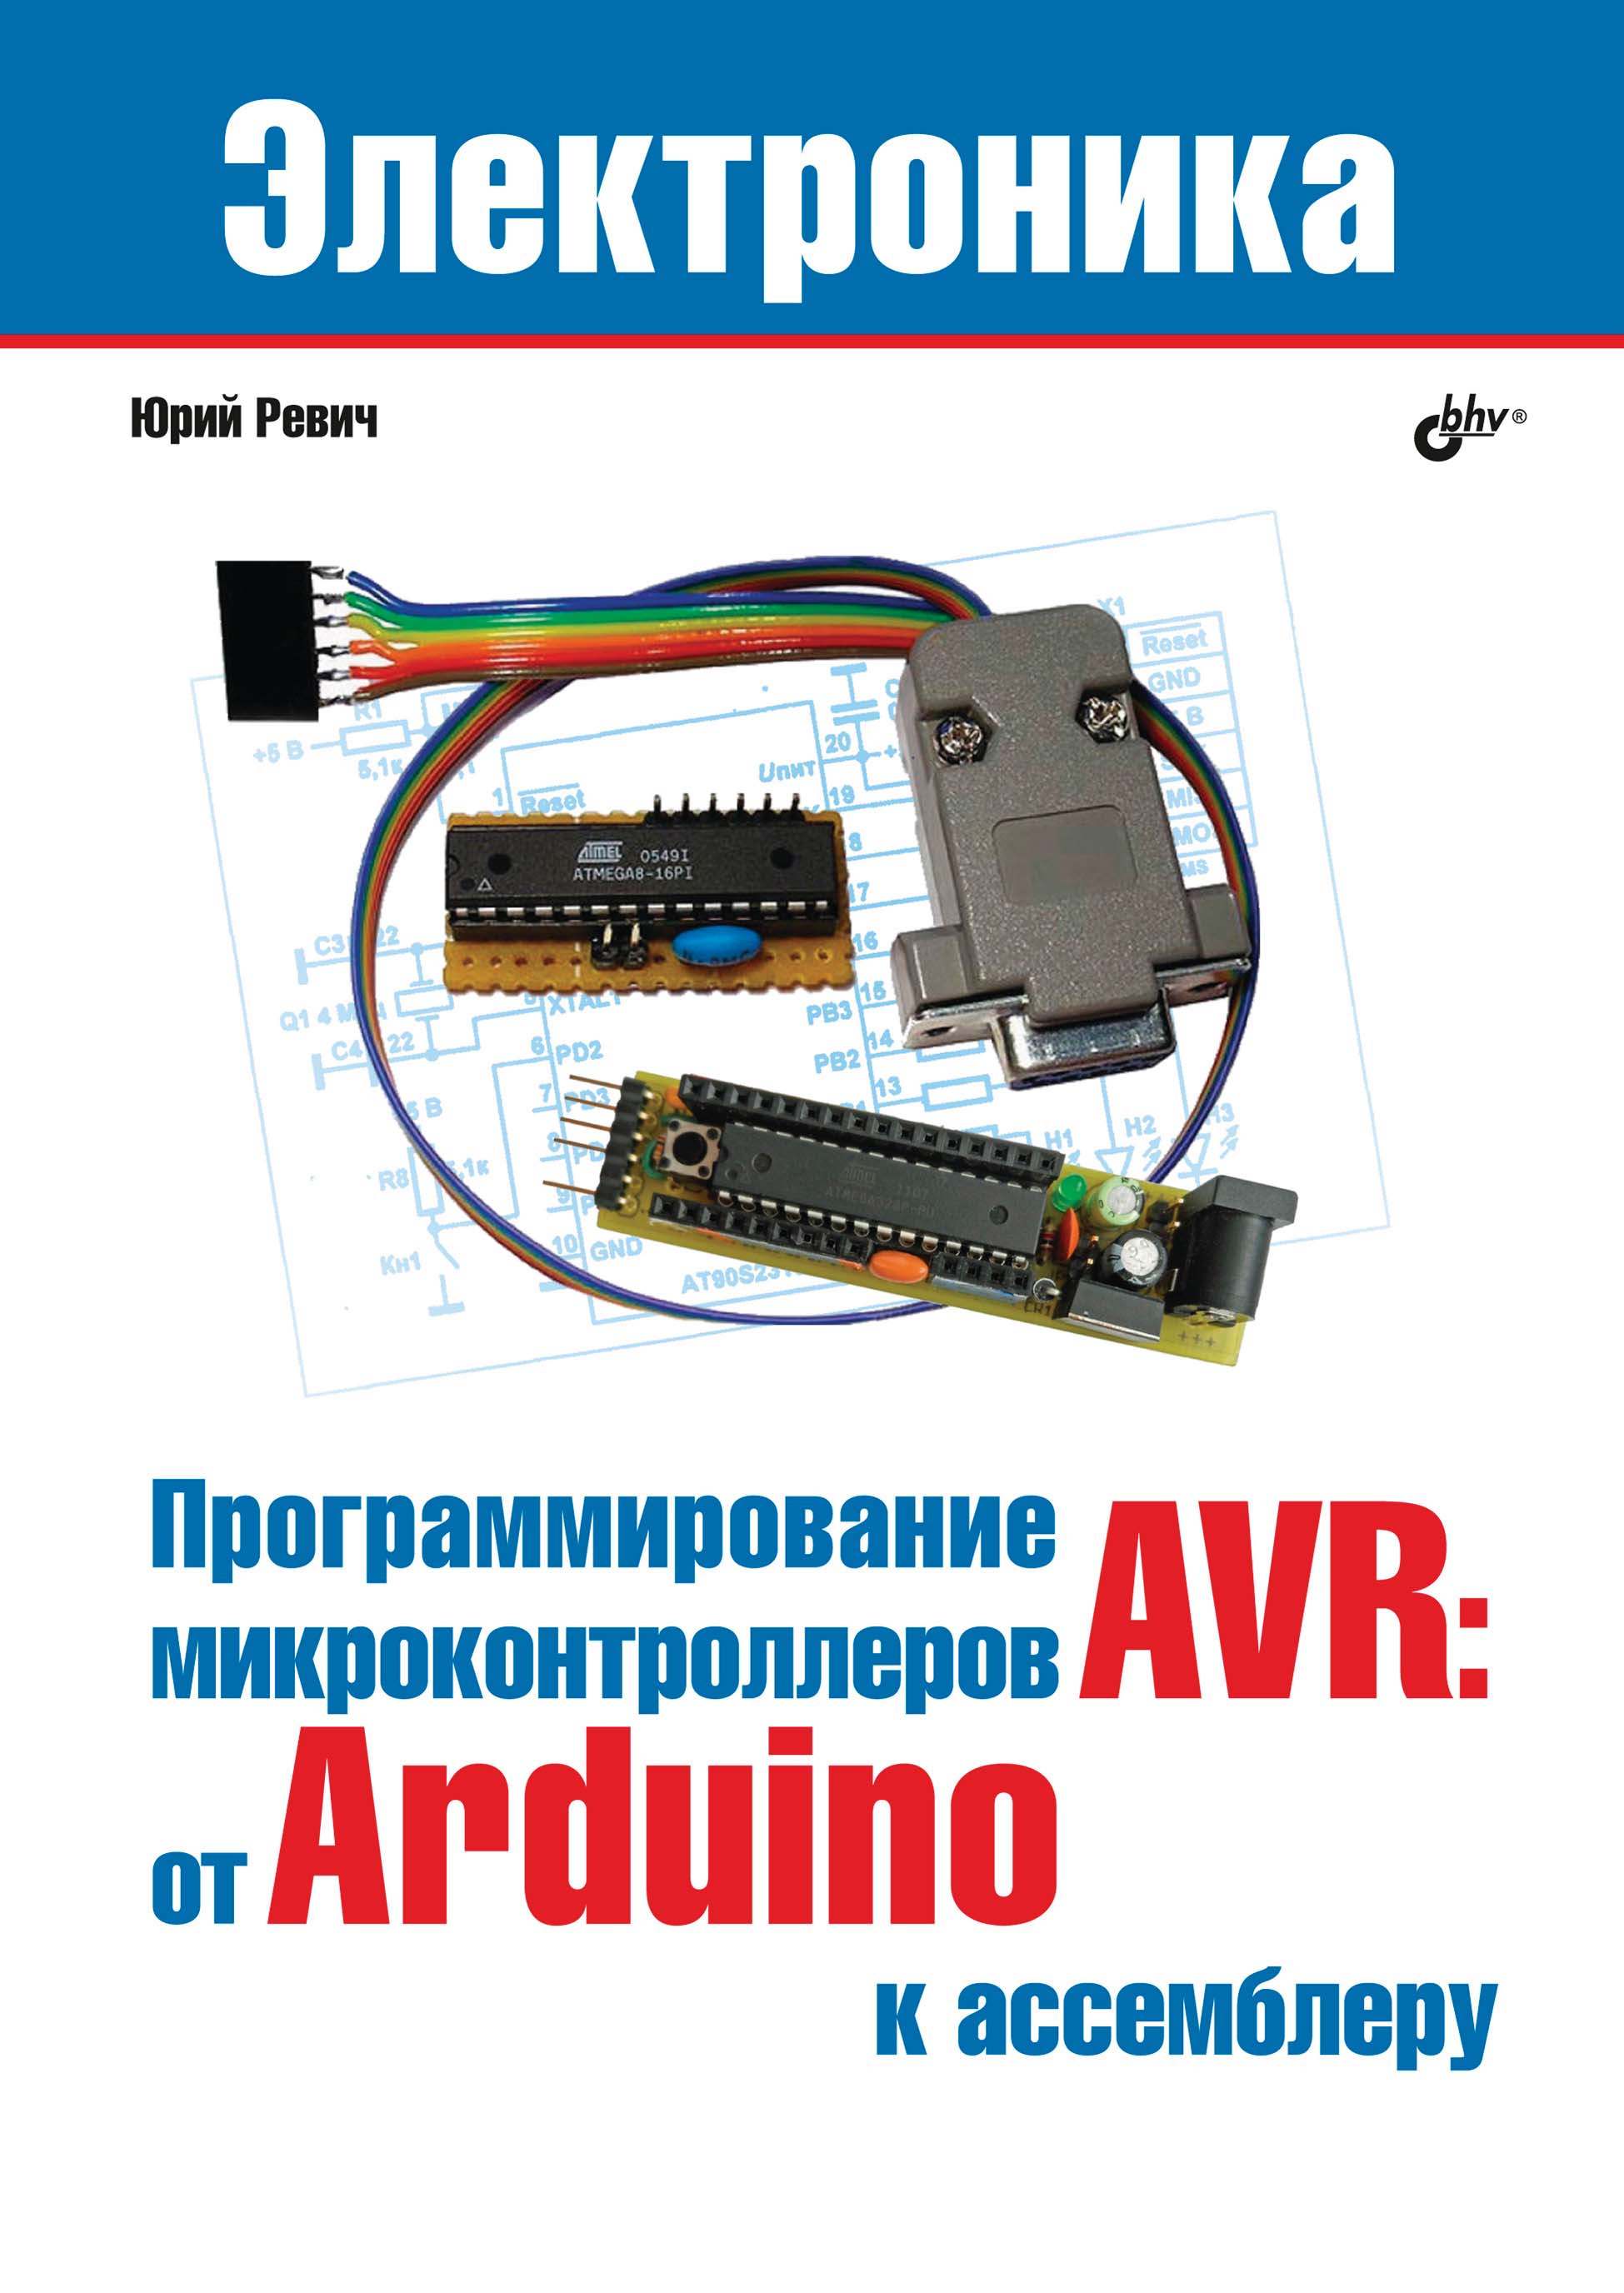 Книга Электроника (BHV) Программирование микроконтроллеров AVR: от Arduino к ассемблеру созданная Юрий Ревич может относится к жанру программирование, электроника. Стоимость электронной книги Программирование микроконтроллеров AVR: от Arduino к ассемблеру с идентификатором 66338070 составляет 536.00 руб.